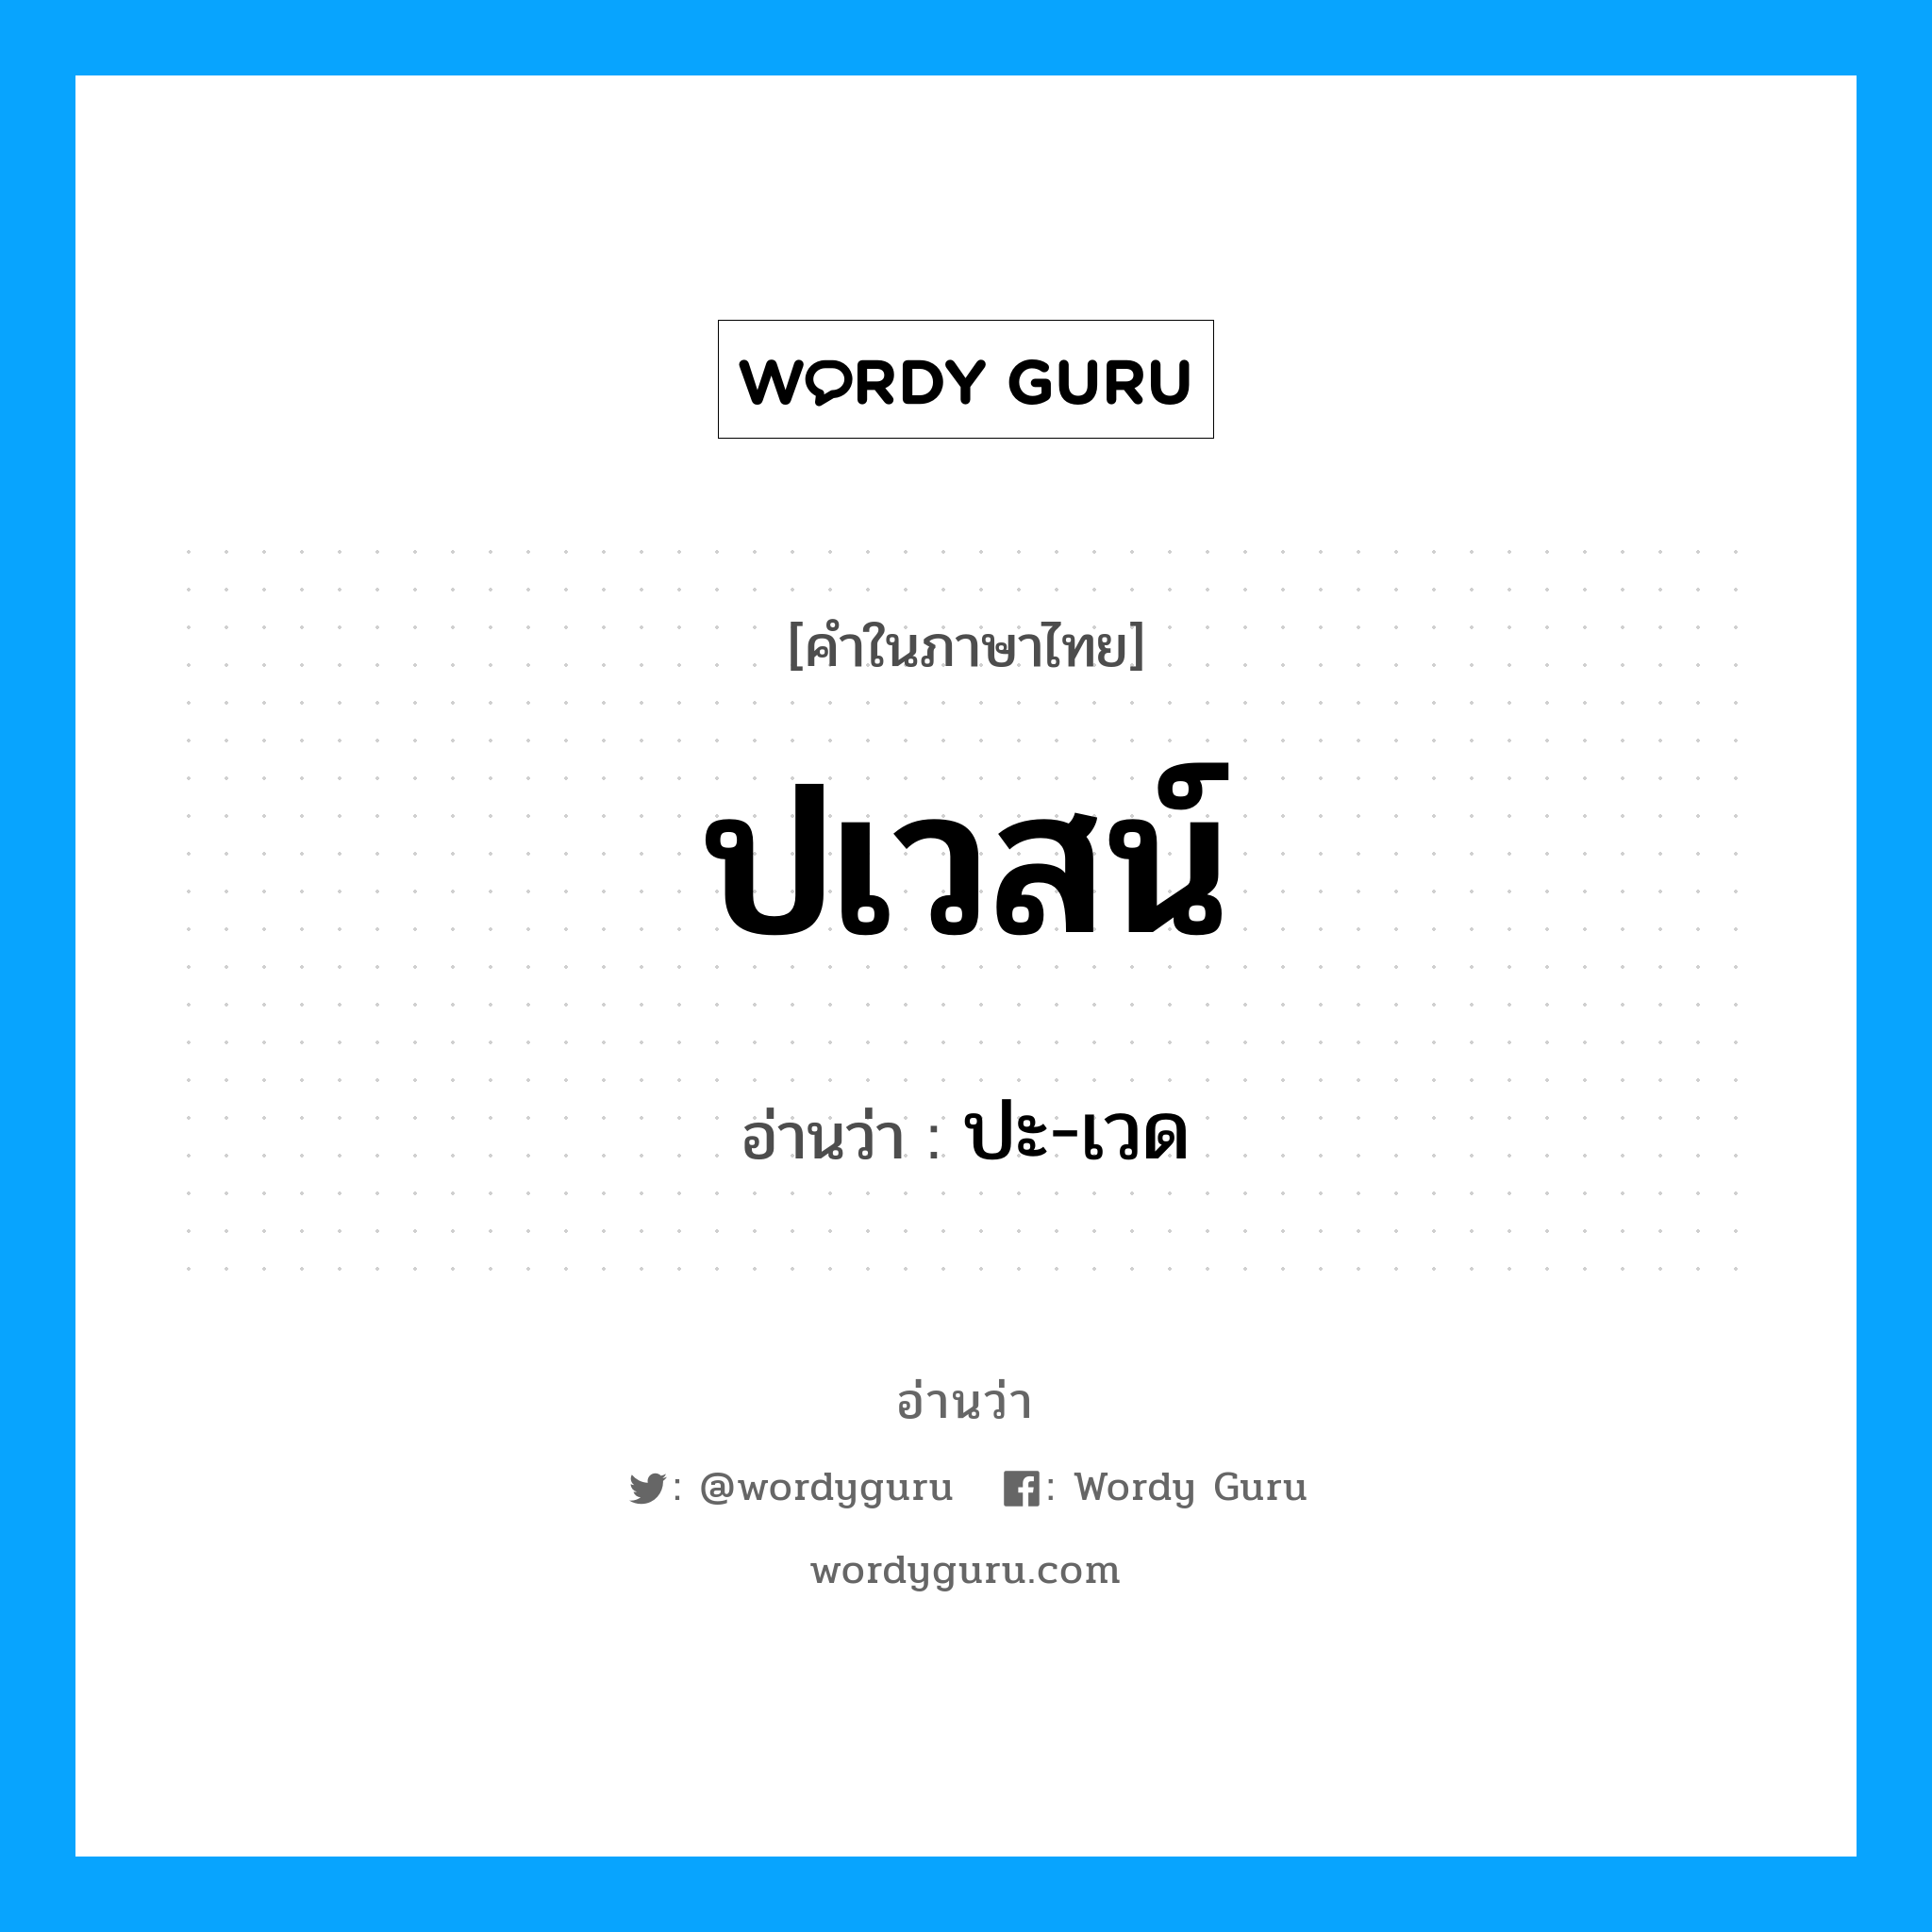 ปะ-เวด เป็นคำอ่านของคำไหน?, คำในภาษาไทย ปะ-เวด อ่านว่า ปเวสน์